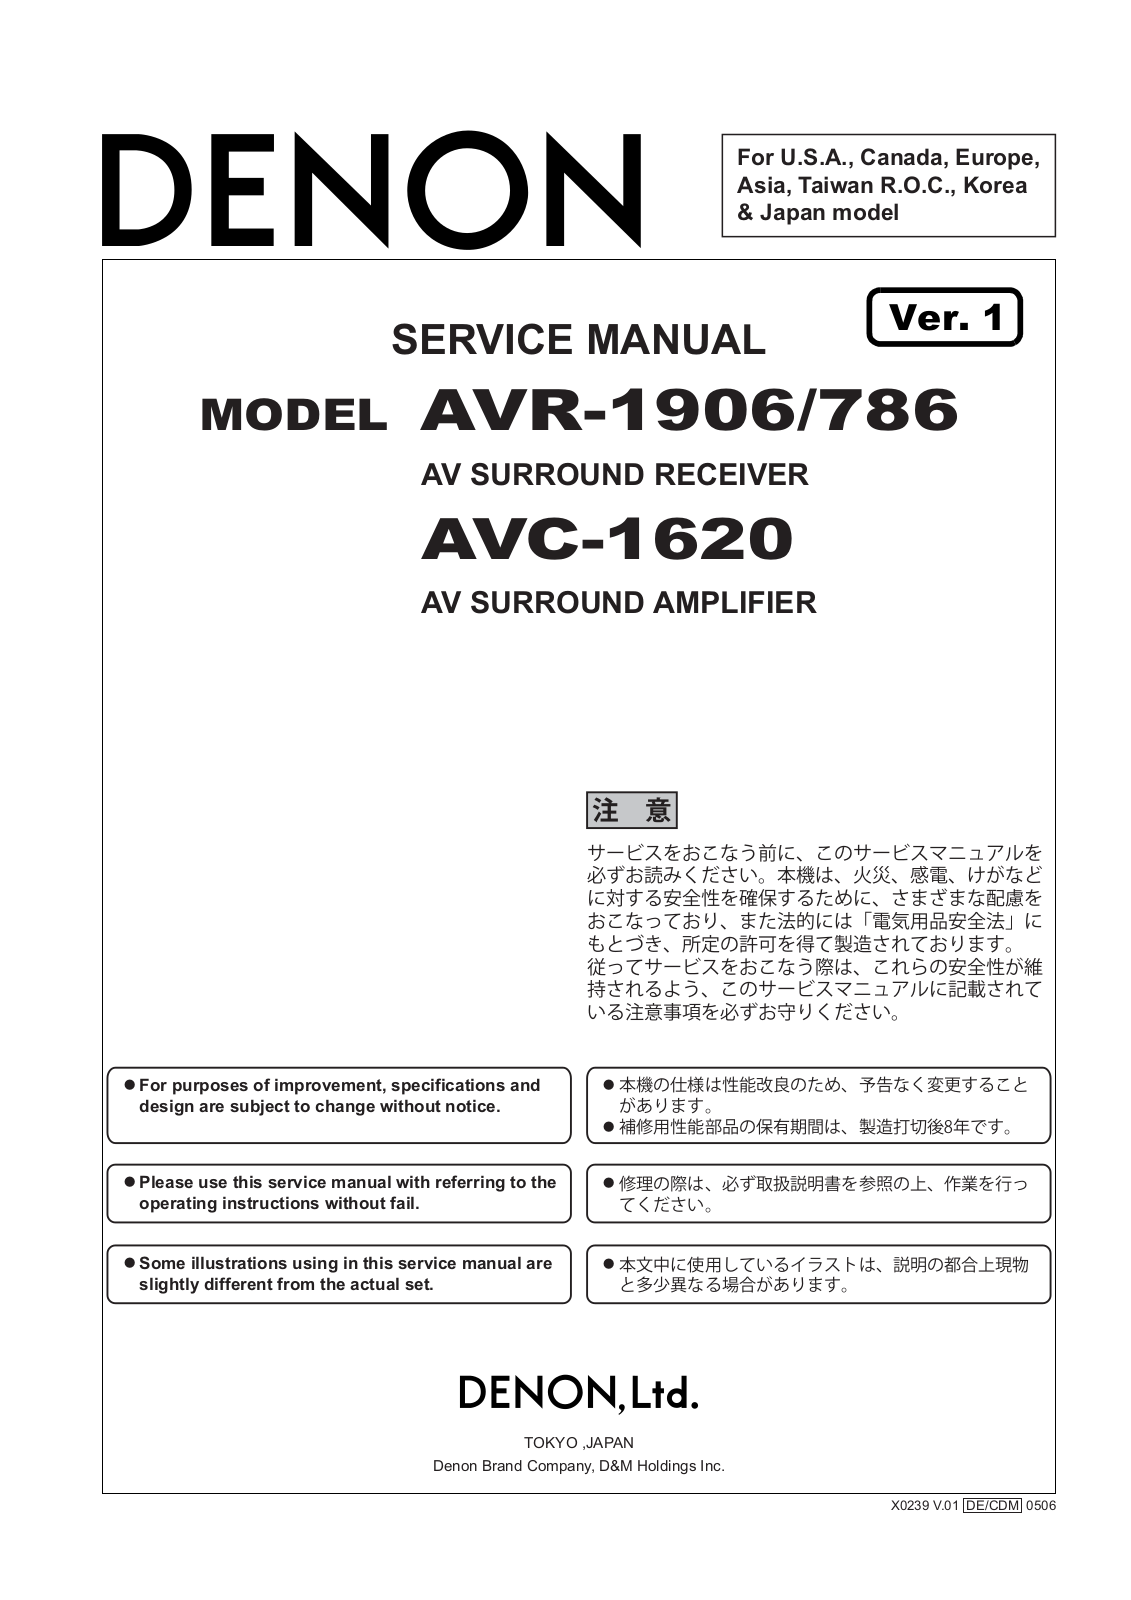 Denon AVC-1320, AVR-786 Schematic